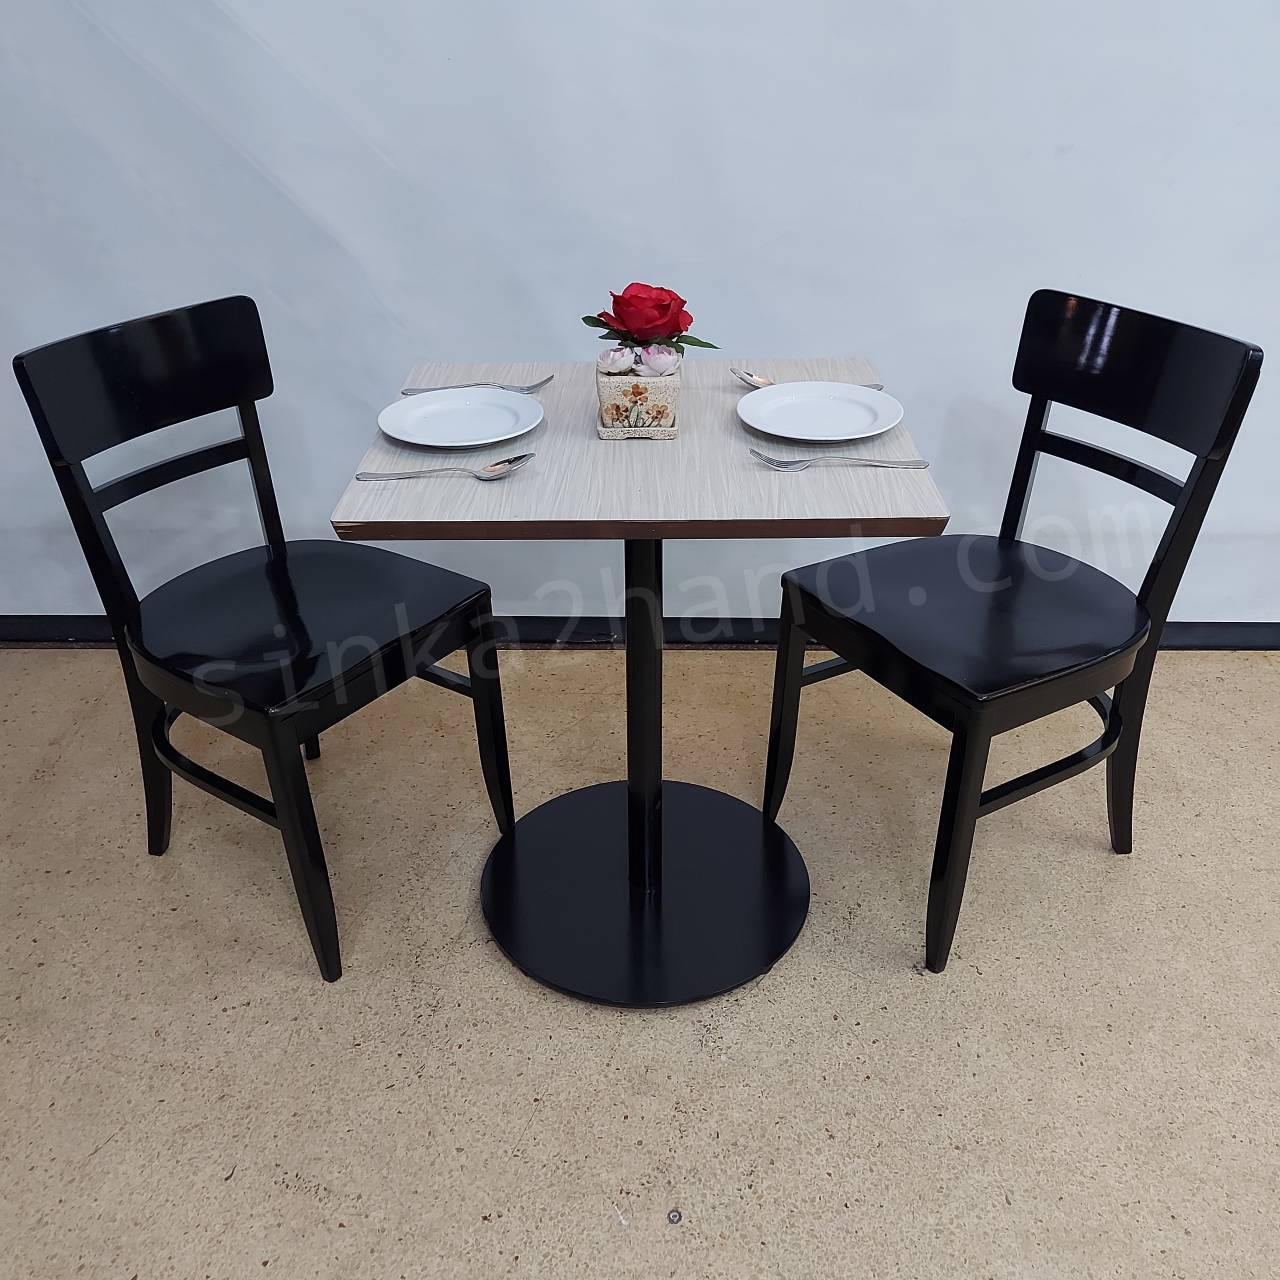   โต๊ะกินข้าว  2 ที่นั่ง+เก้าอี้โครงไม้ดำ